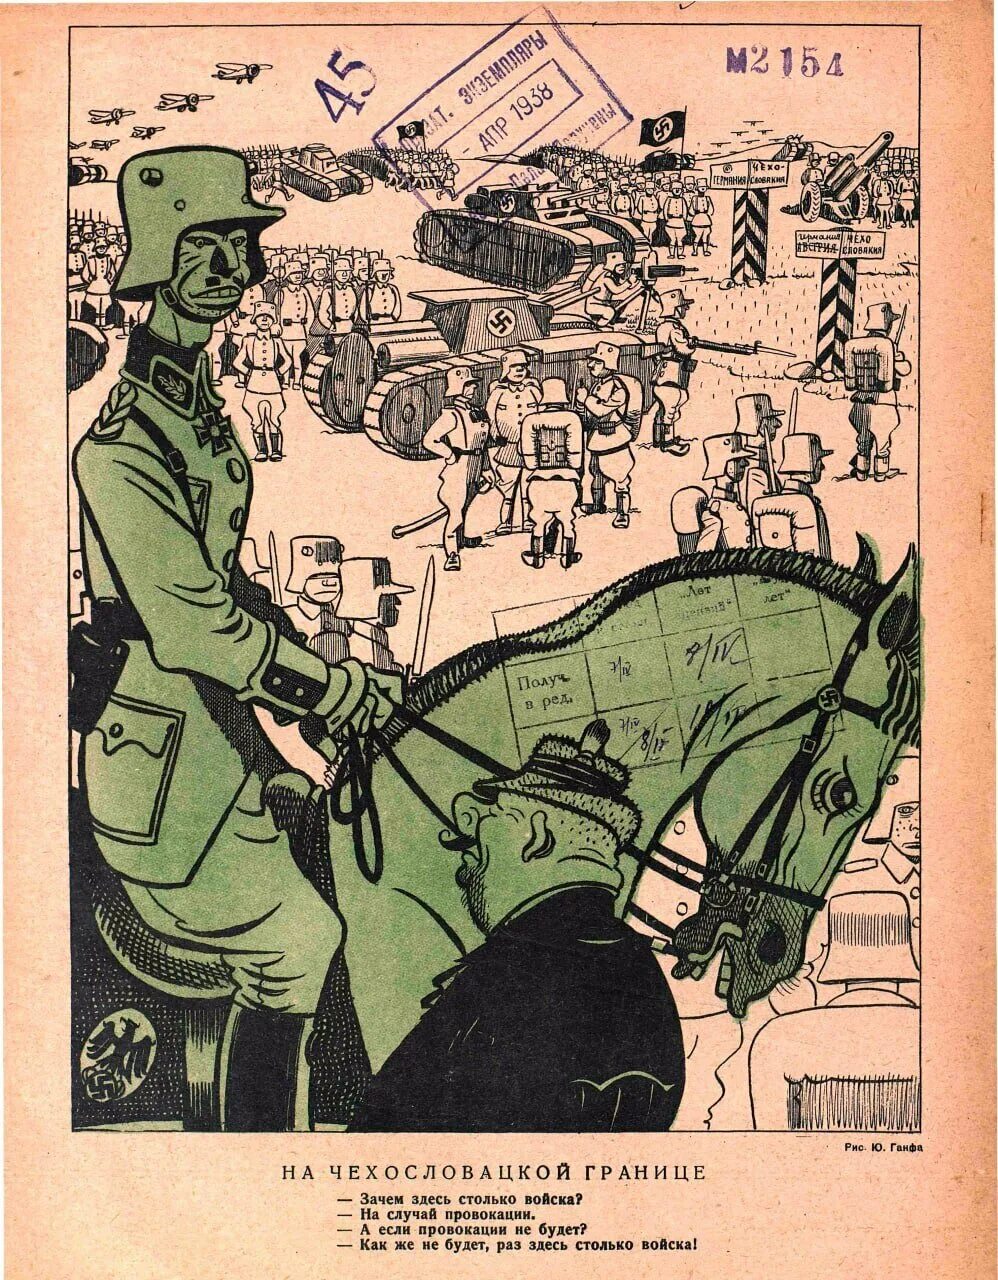 Зачем вы здесь учитесь. Журнал крокодил 1938 год. Советские карикатуры. Карикатура на Чехословацкой границе.